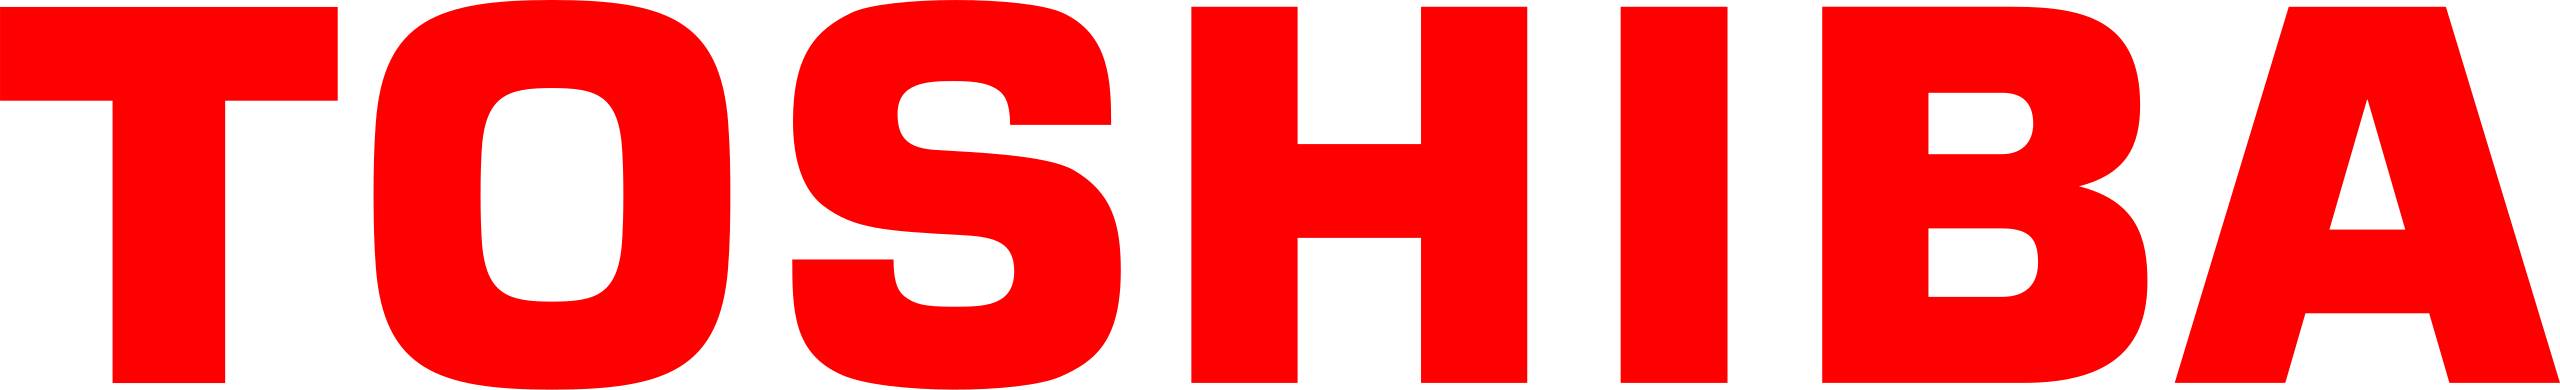 2560px-Toshiba_logo.svg